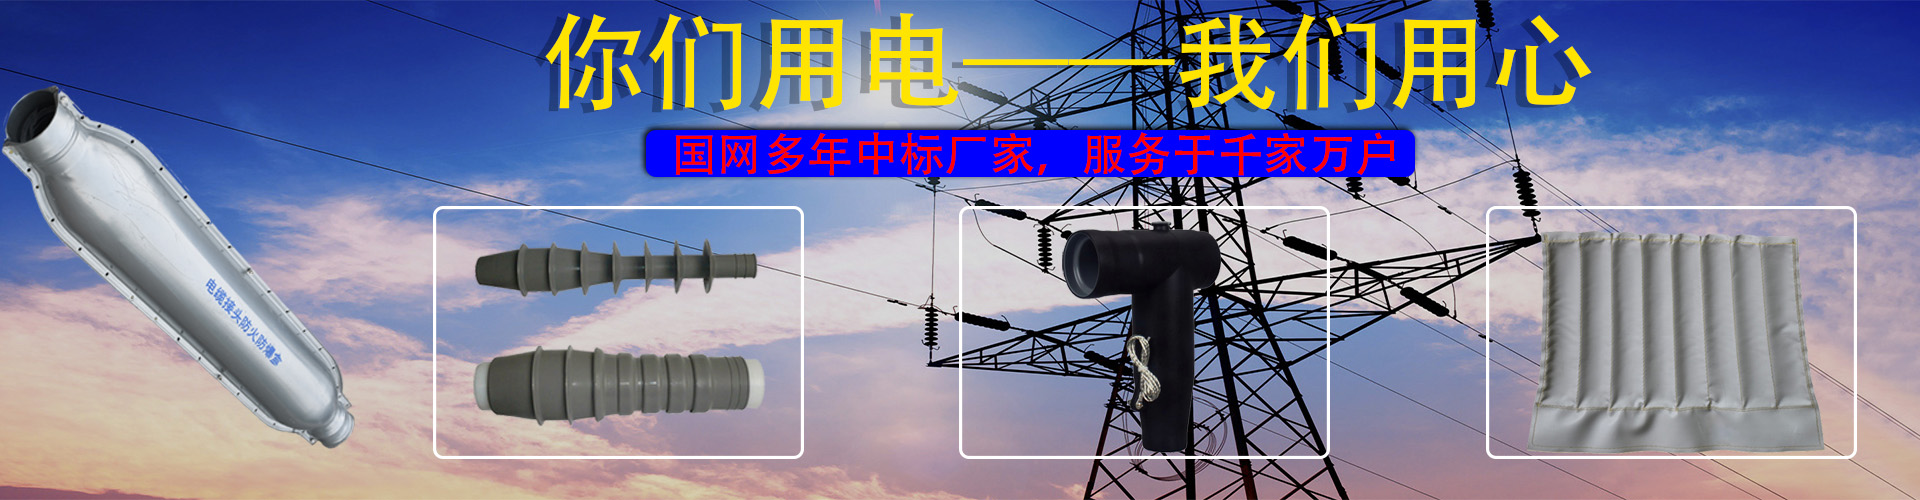 深圳华玛电力科技有限公司